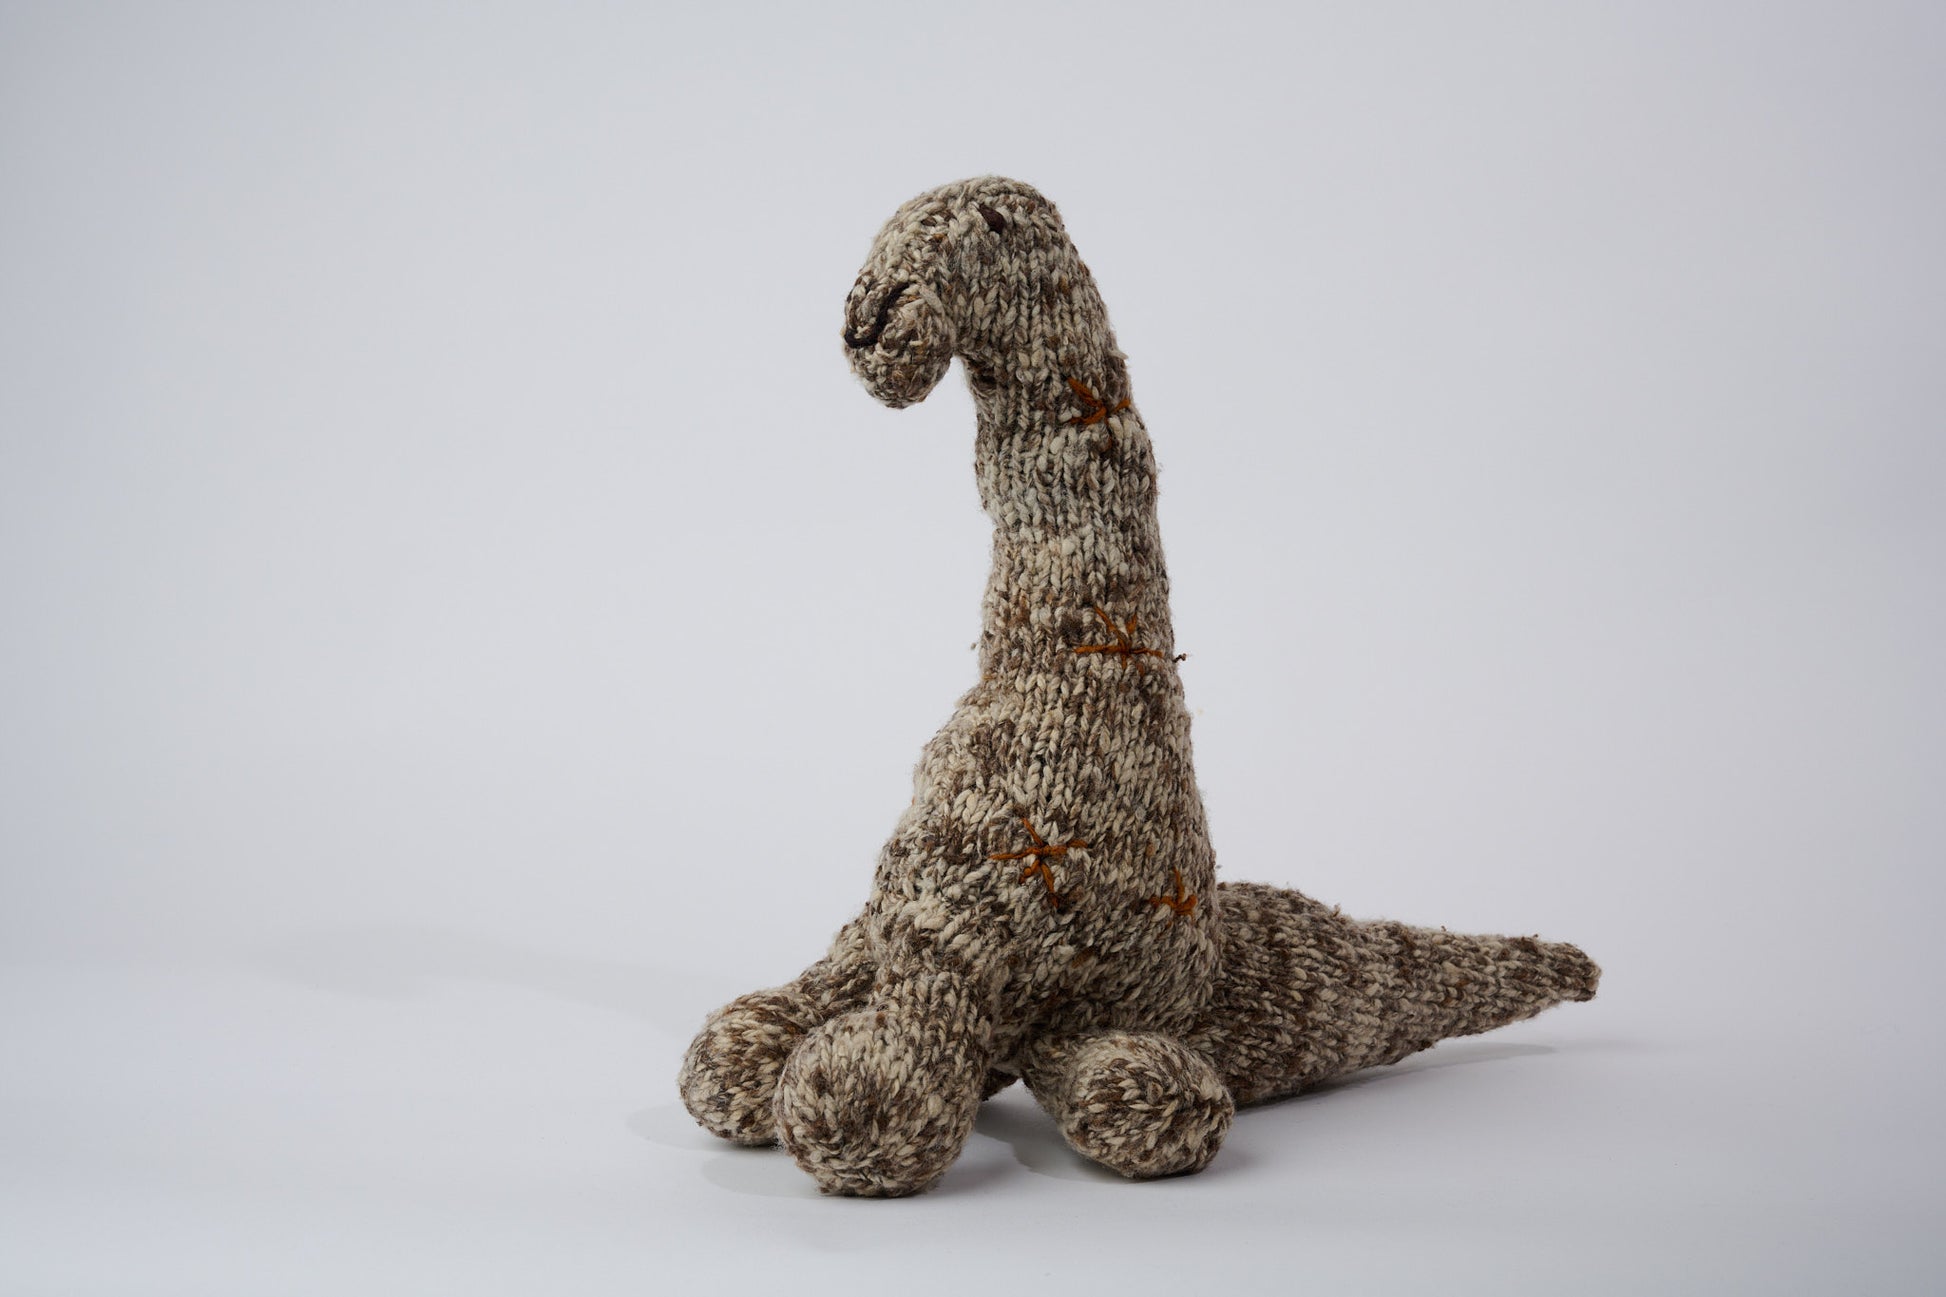 NESSIE, doudou brontosaure en laine mérinos. Fait main. Moyen format. Cette sympathique peluche dinosaure est disponible en 3 tailles. 